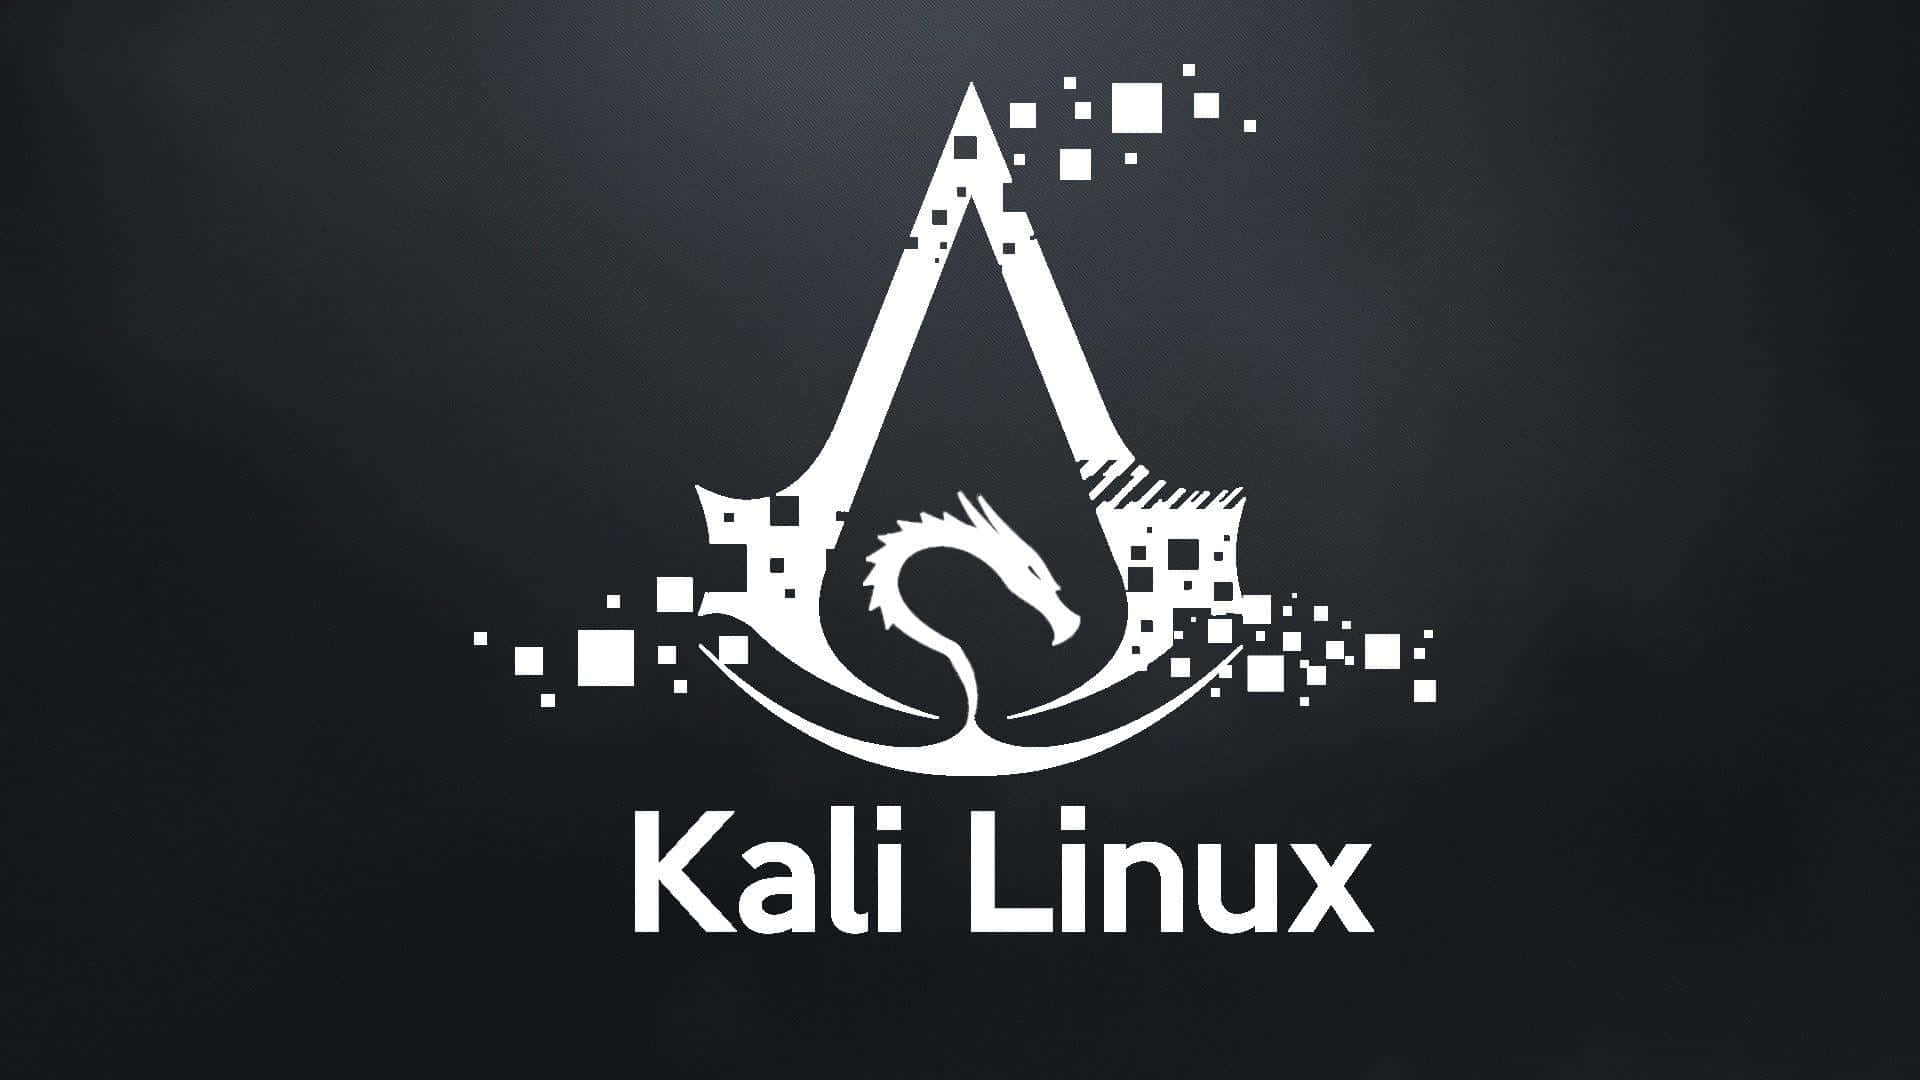 Enväderbiten Bakgrund Av Ett Kali Linux-operativsystem, Med En Logo Av Ett Dödskallehuvud.